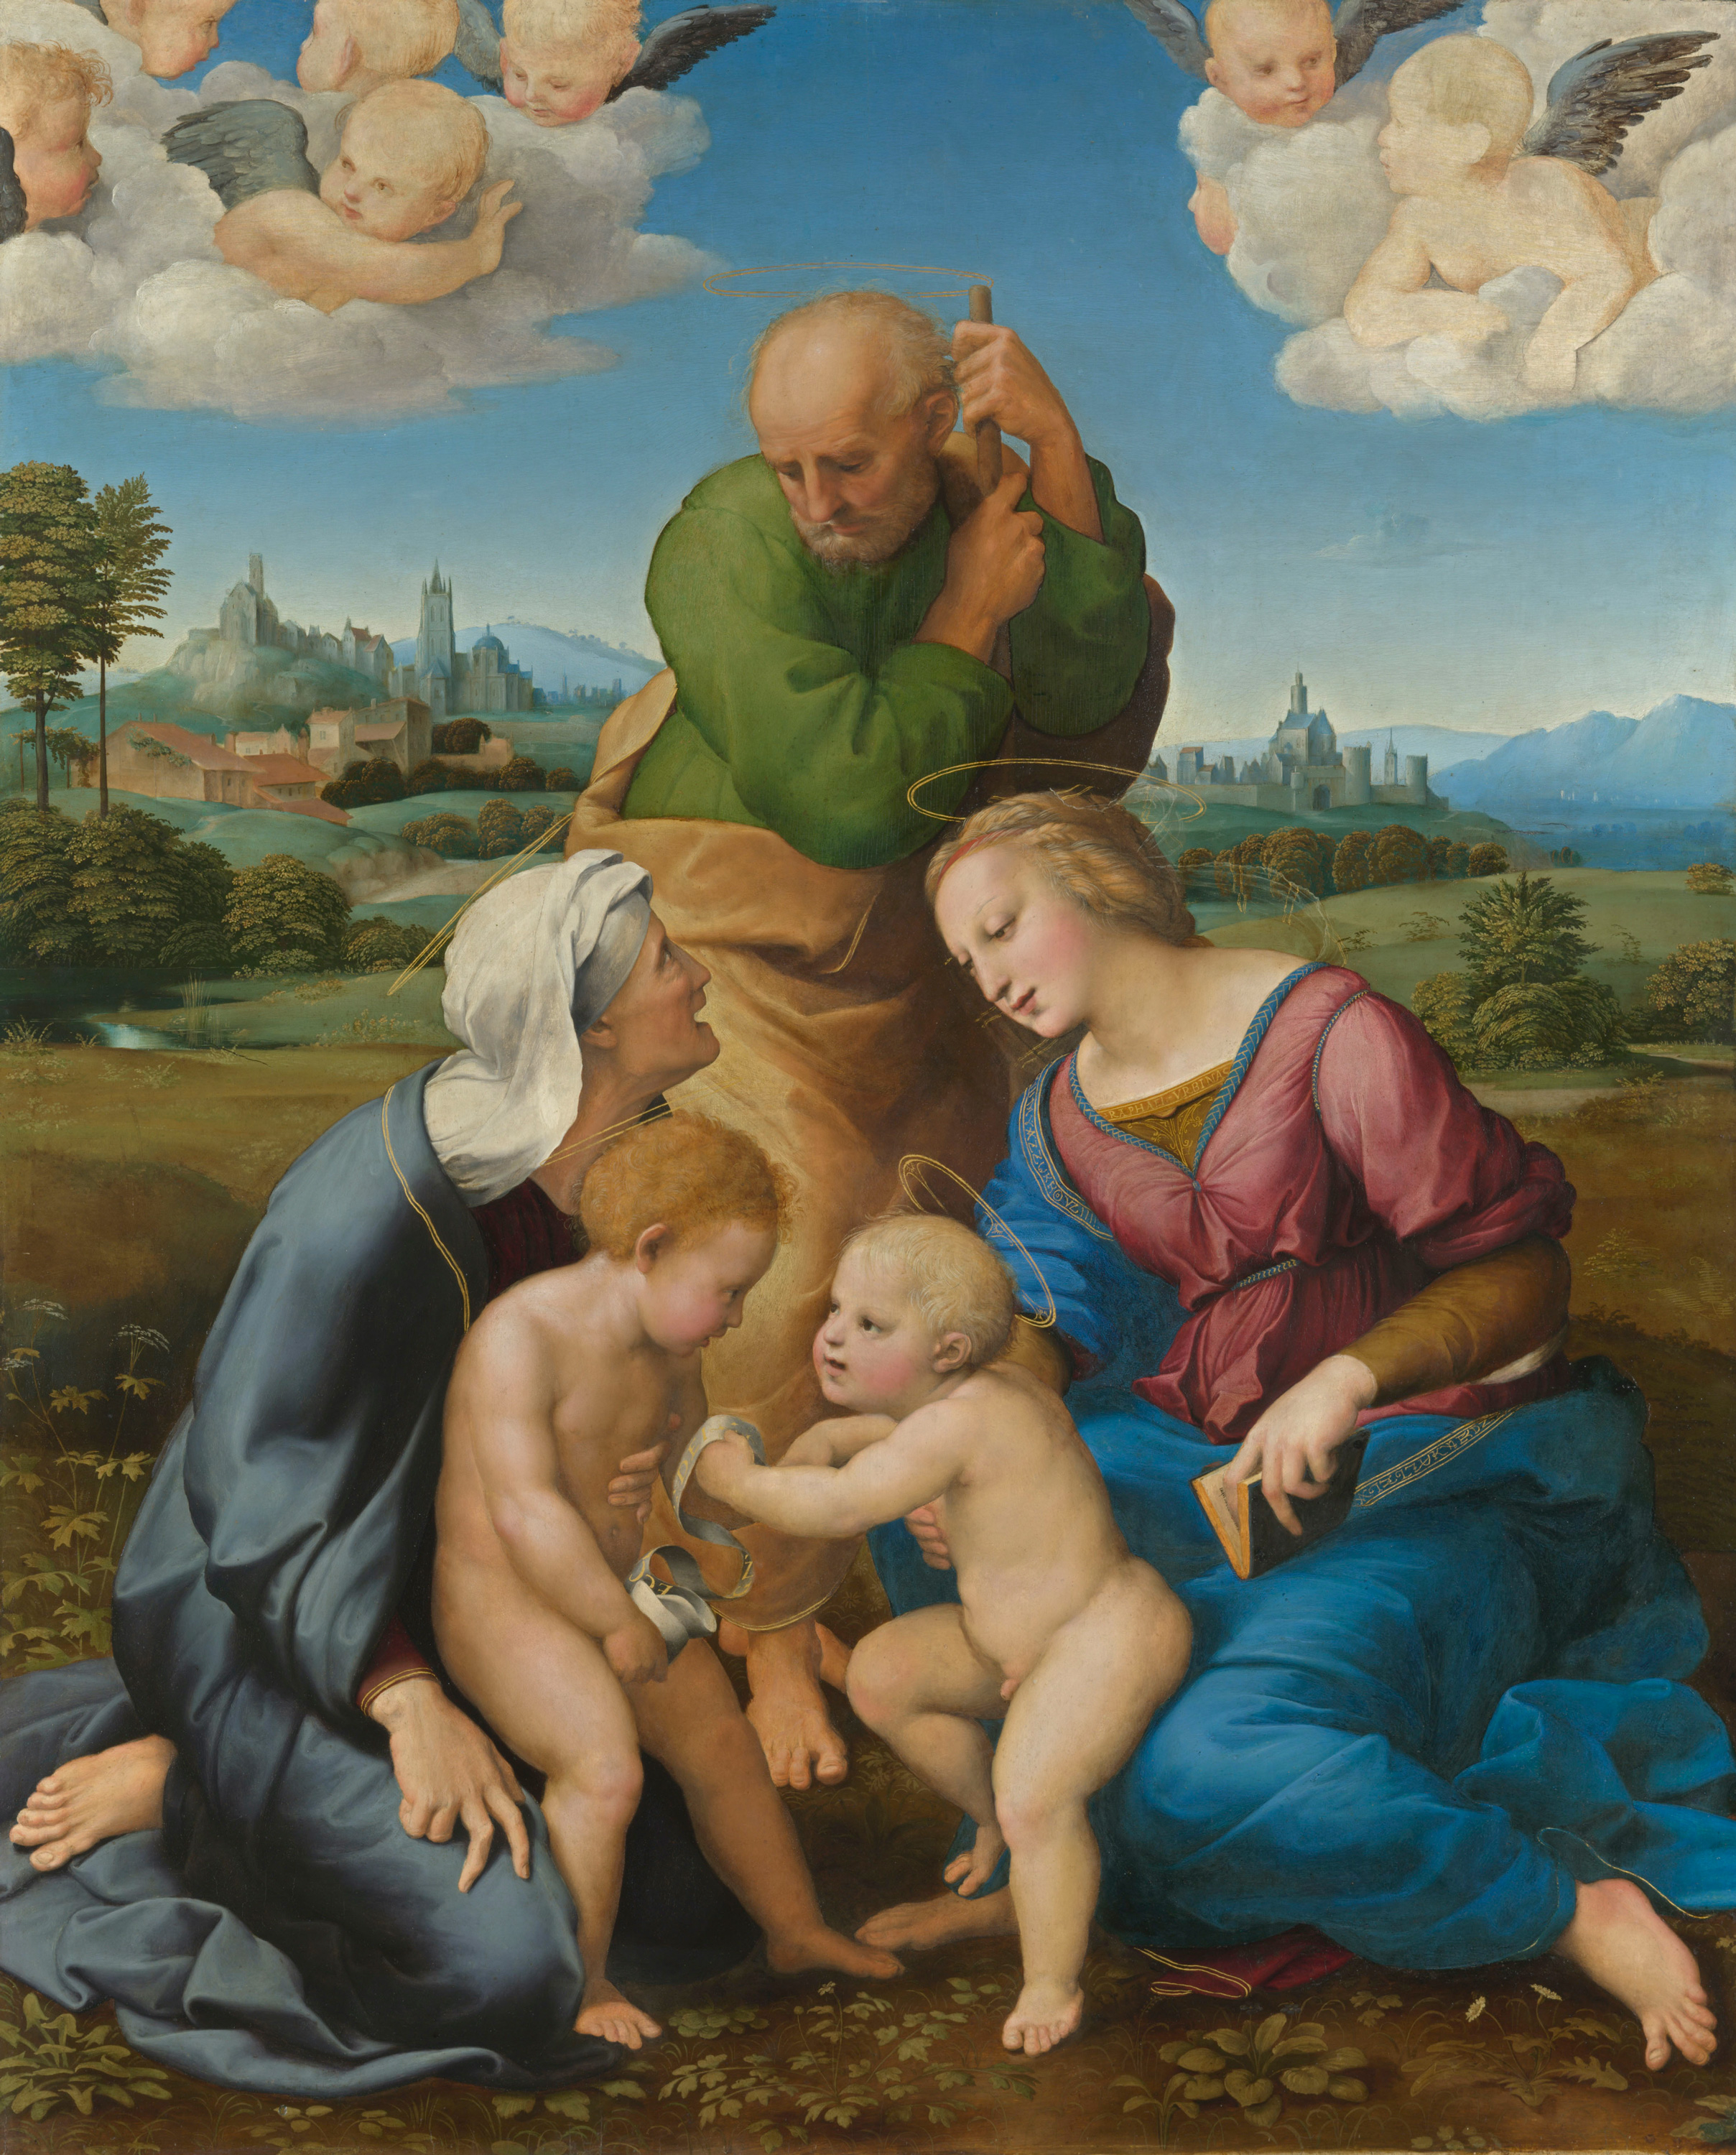 Sacra Famiglia Canigiani by Raphael Santi - 1505/1506 - 131 x 107 cm Alte Pinakothek